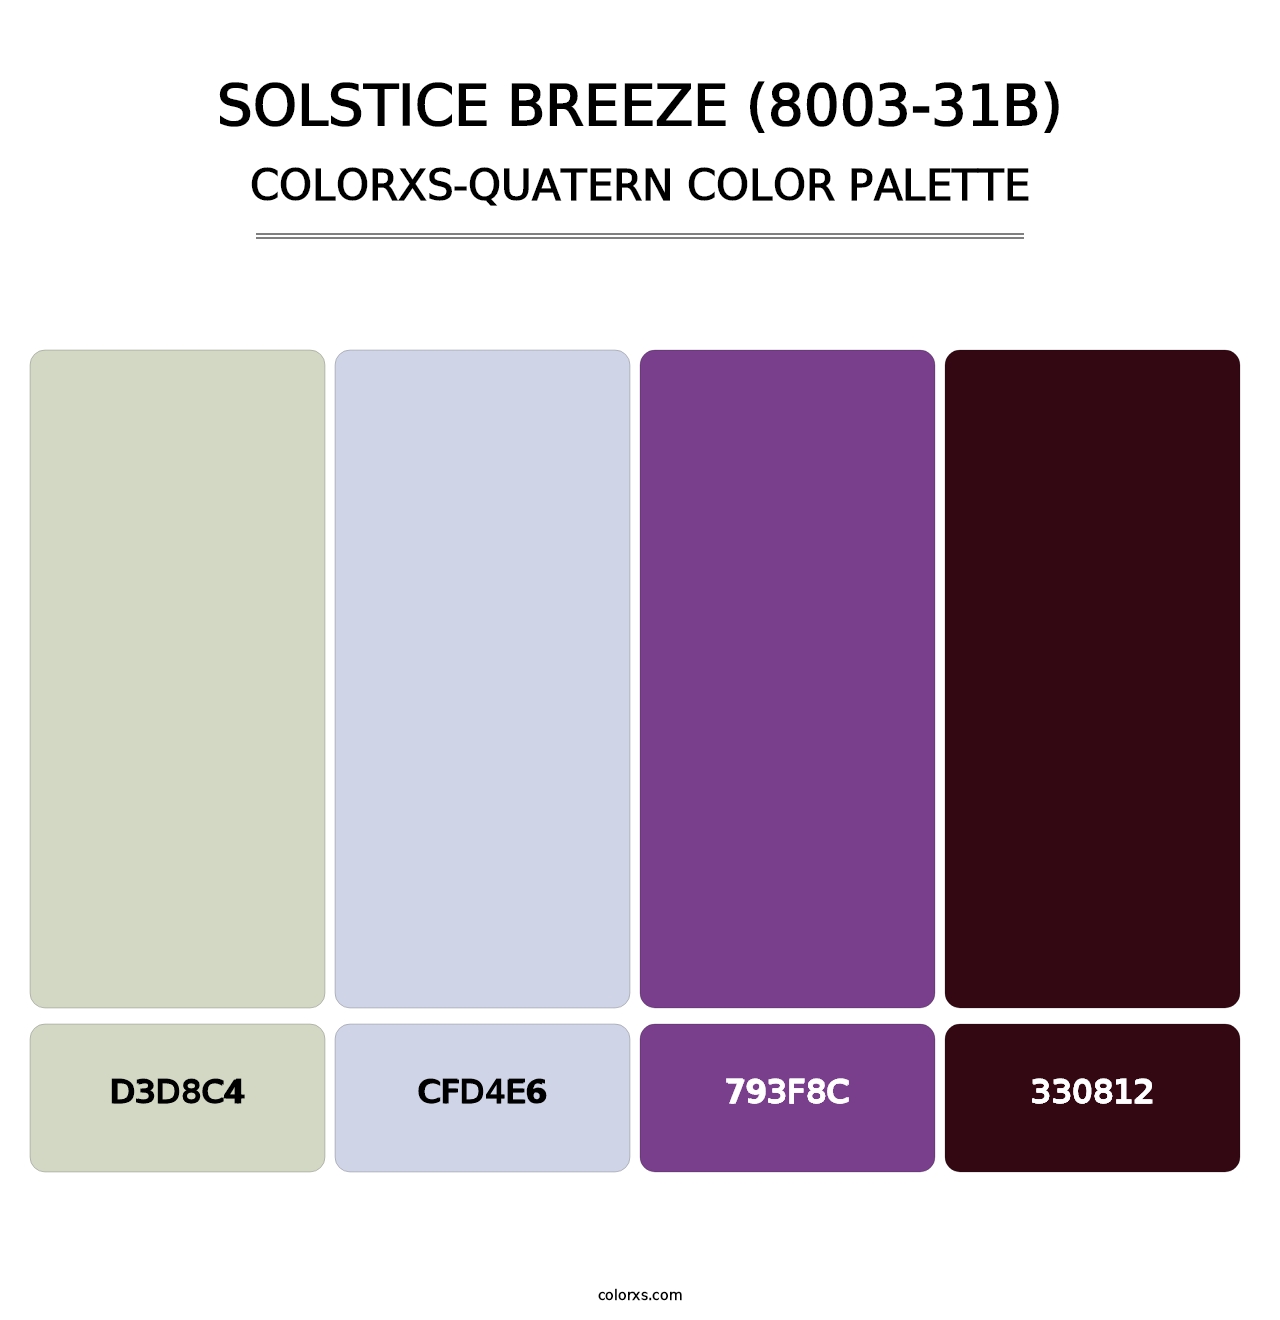 Solstice Breeze (8003-31B) - Colorxs Quatern Palette